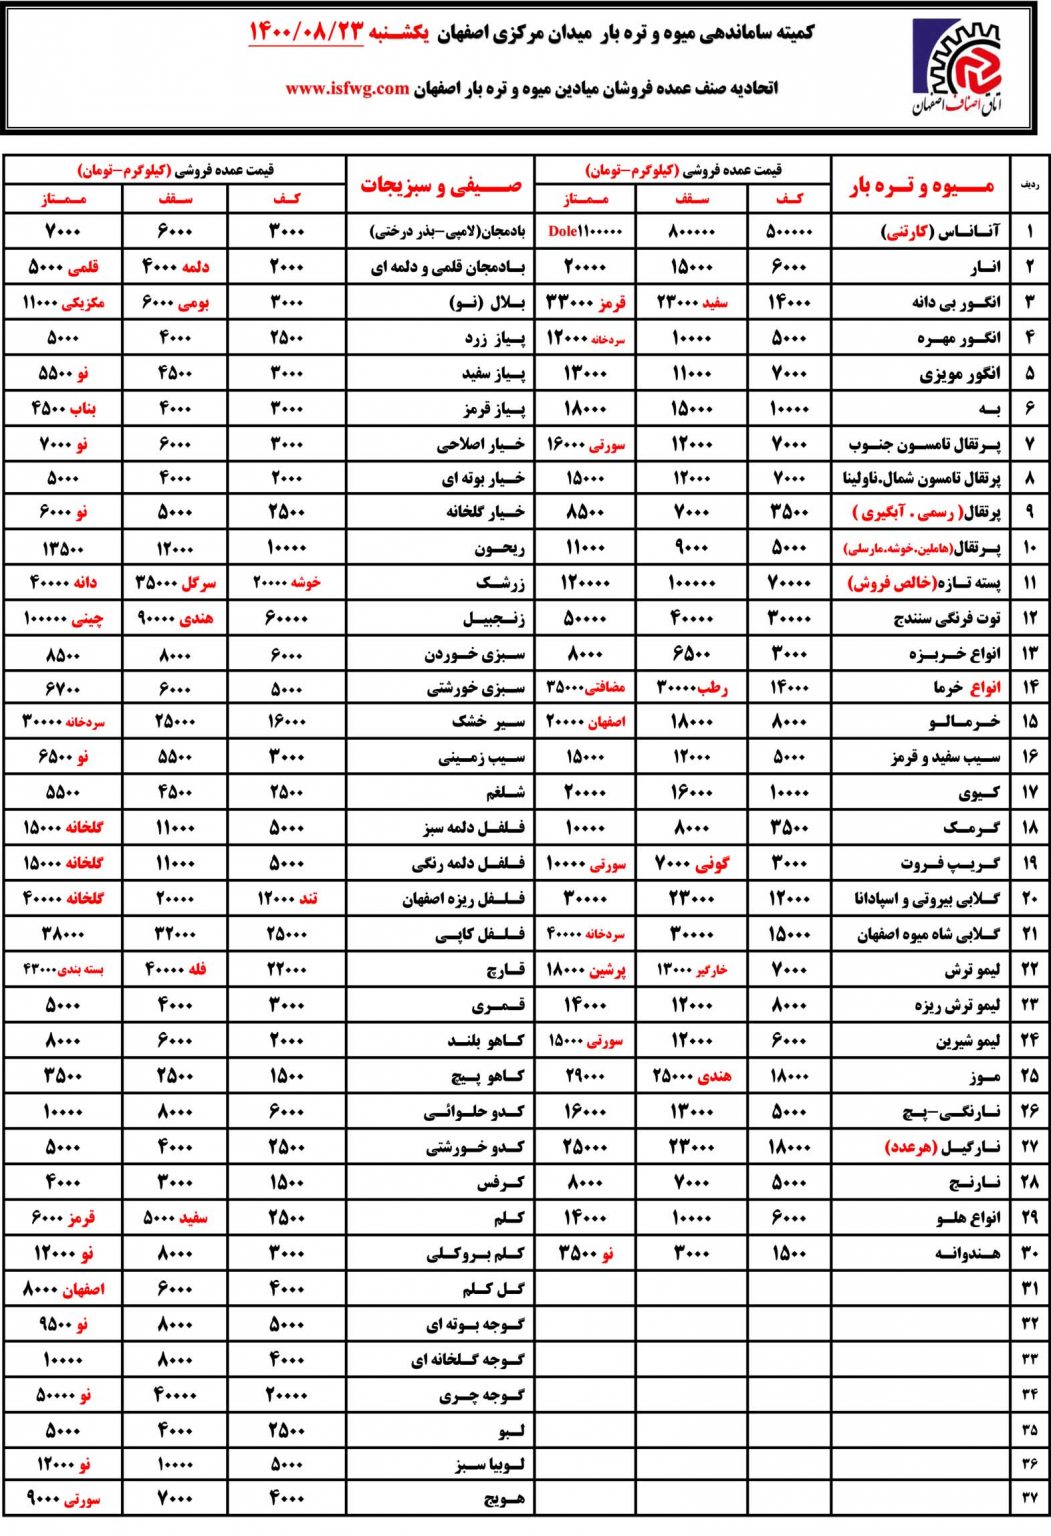 لیست قیمت روز میدان میوه اصفهان بیست و سوم آبان 1400